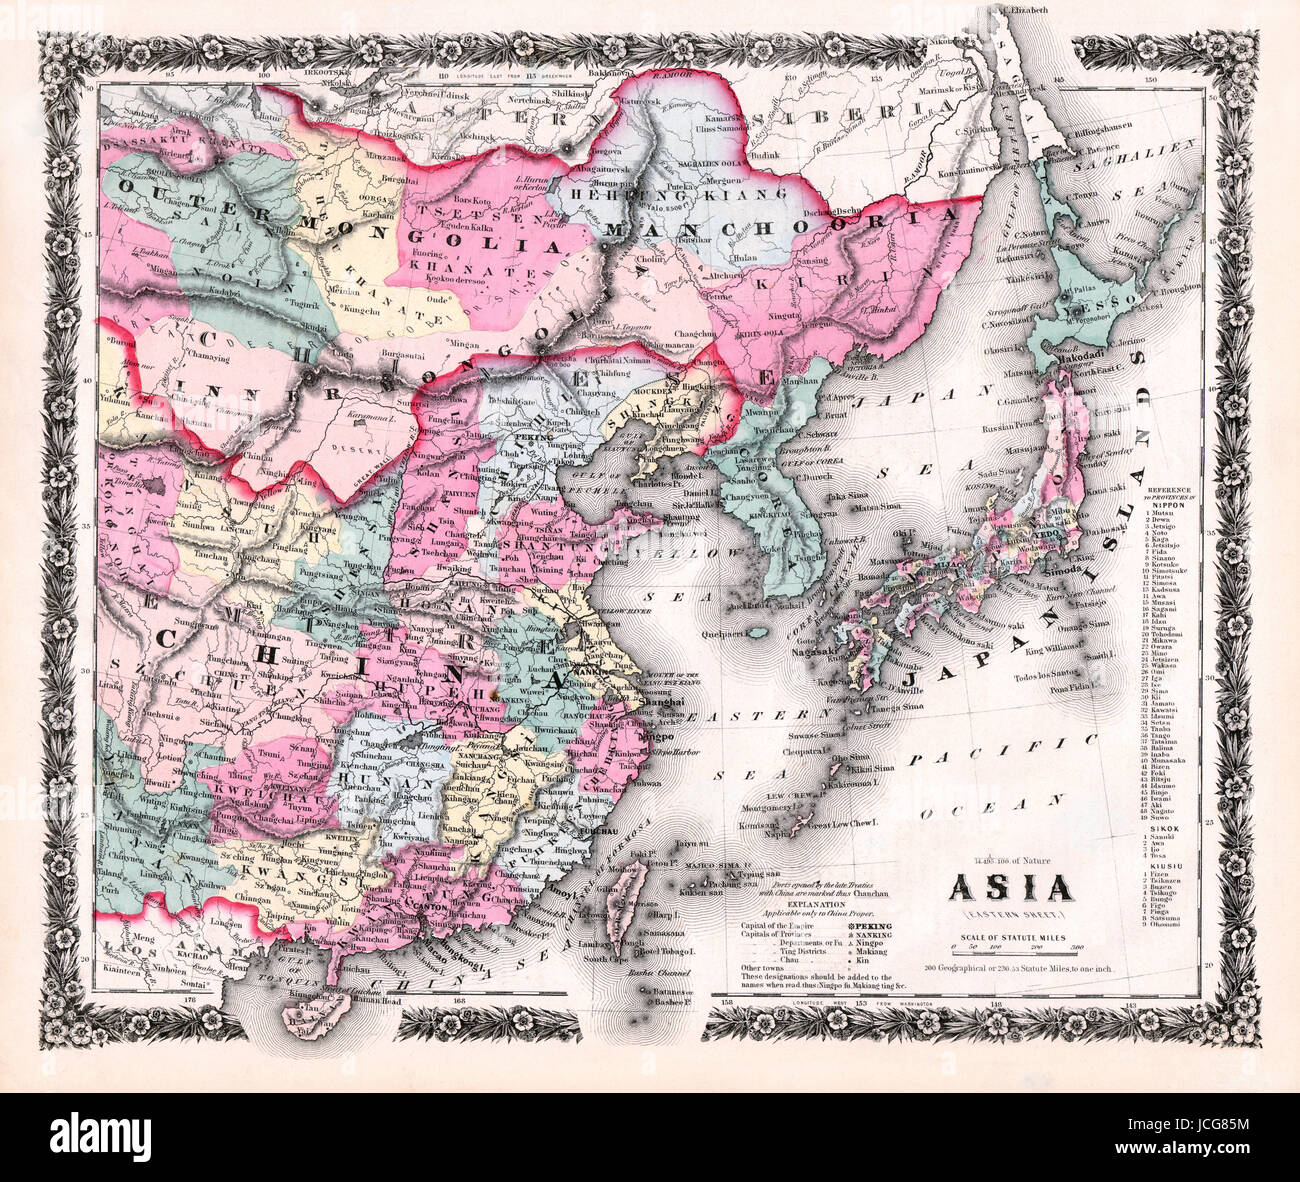 1858 Colton Karte von Ost-Asien einschließlich Japan, China, Korea, Taiwan, Hong Kong, Macao und andere mit floraler Bordüre. Stockfoto